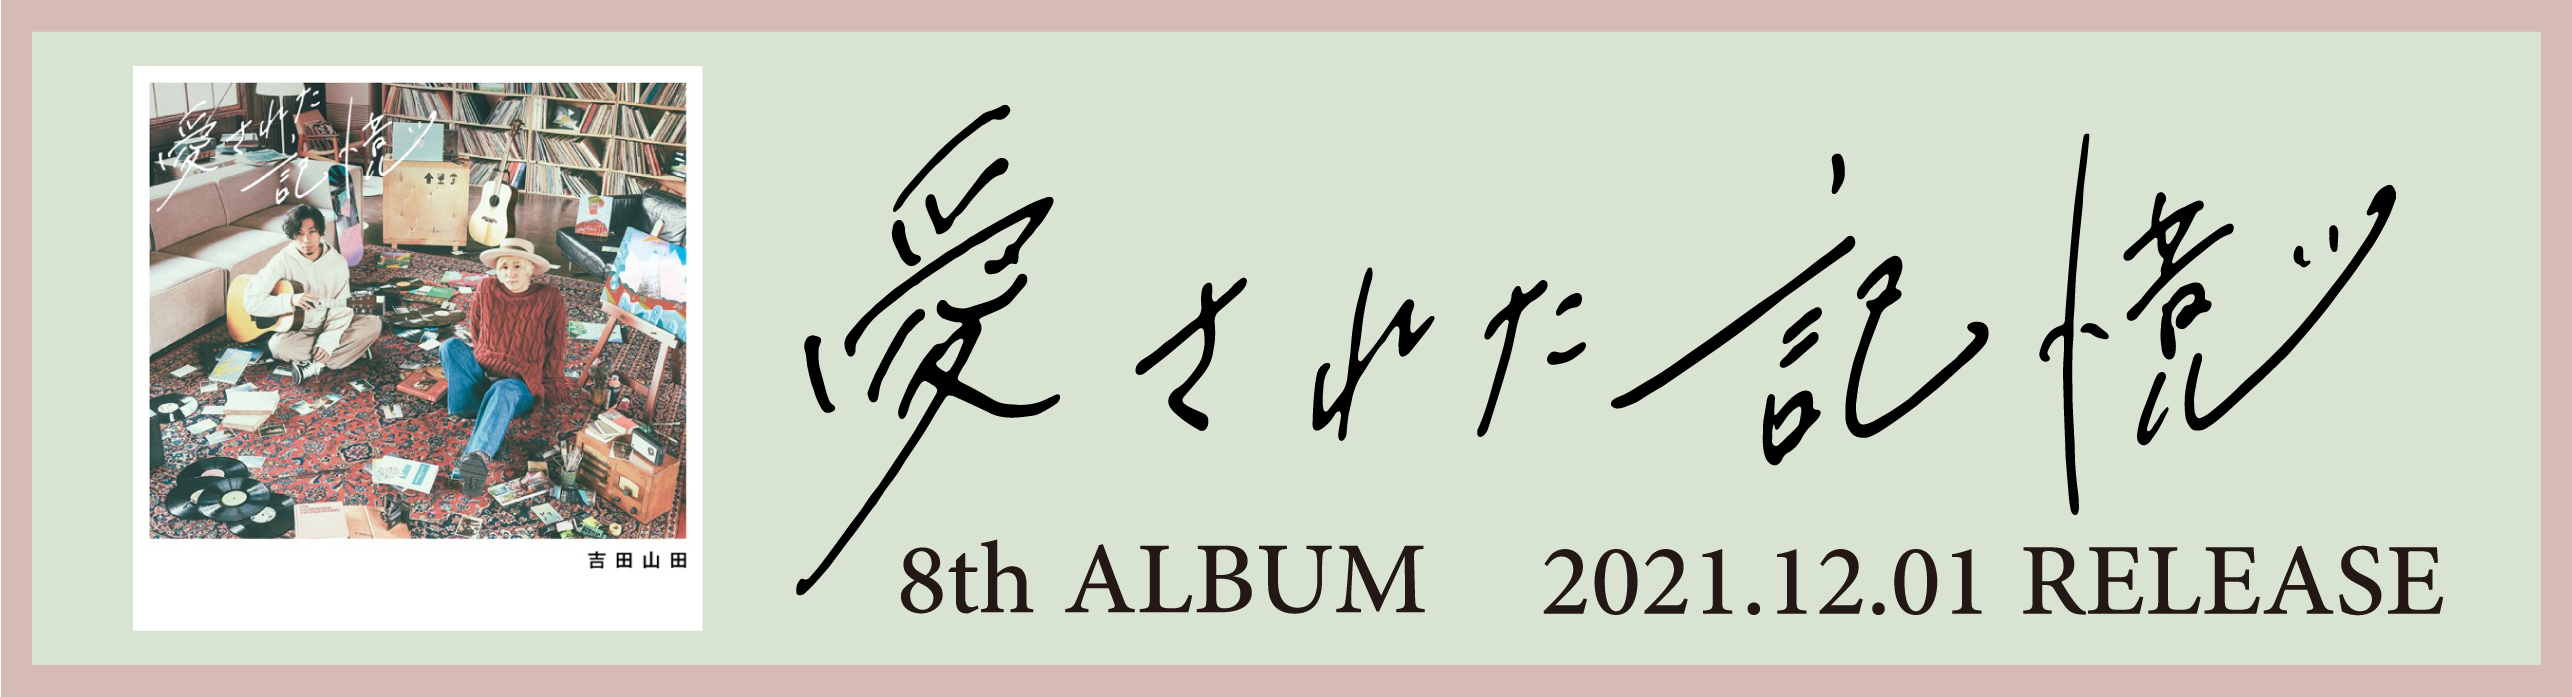 8th ALBUM「愛された記憶」特設ページ